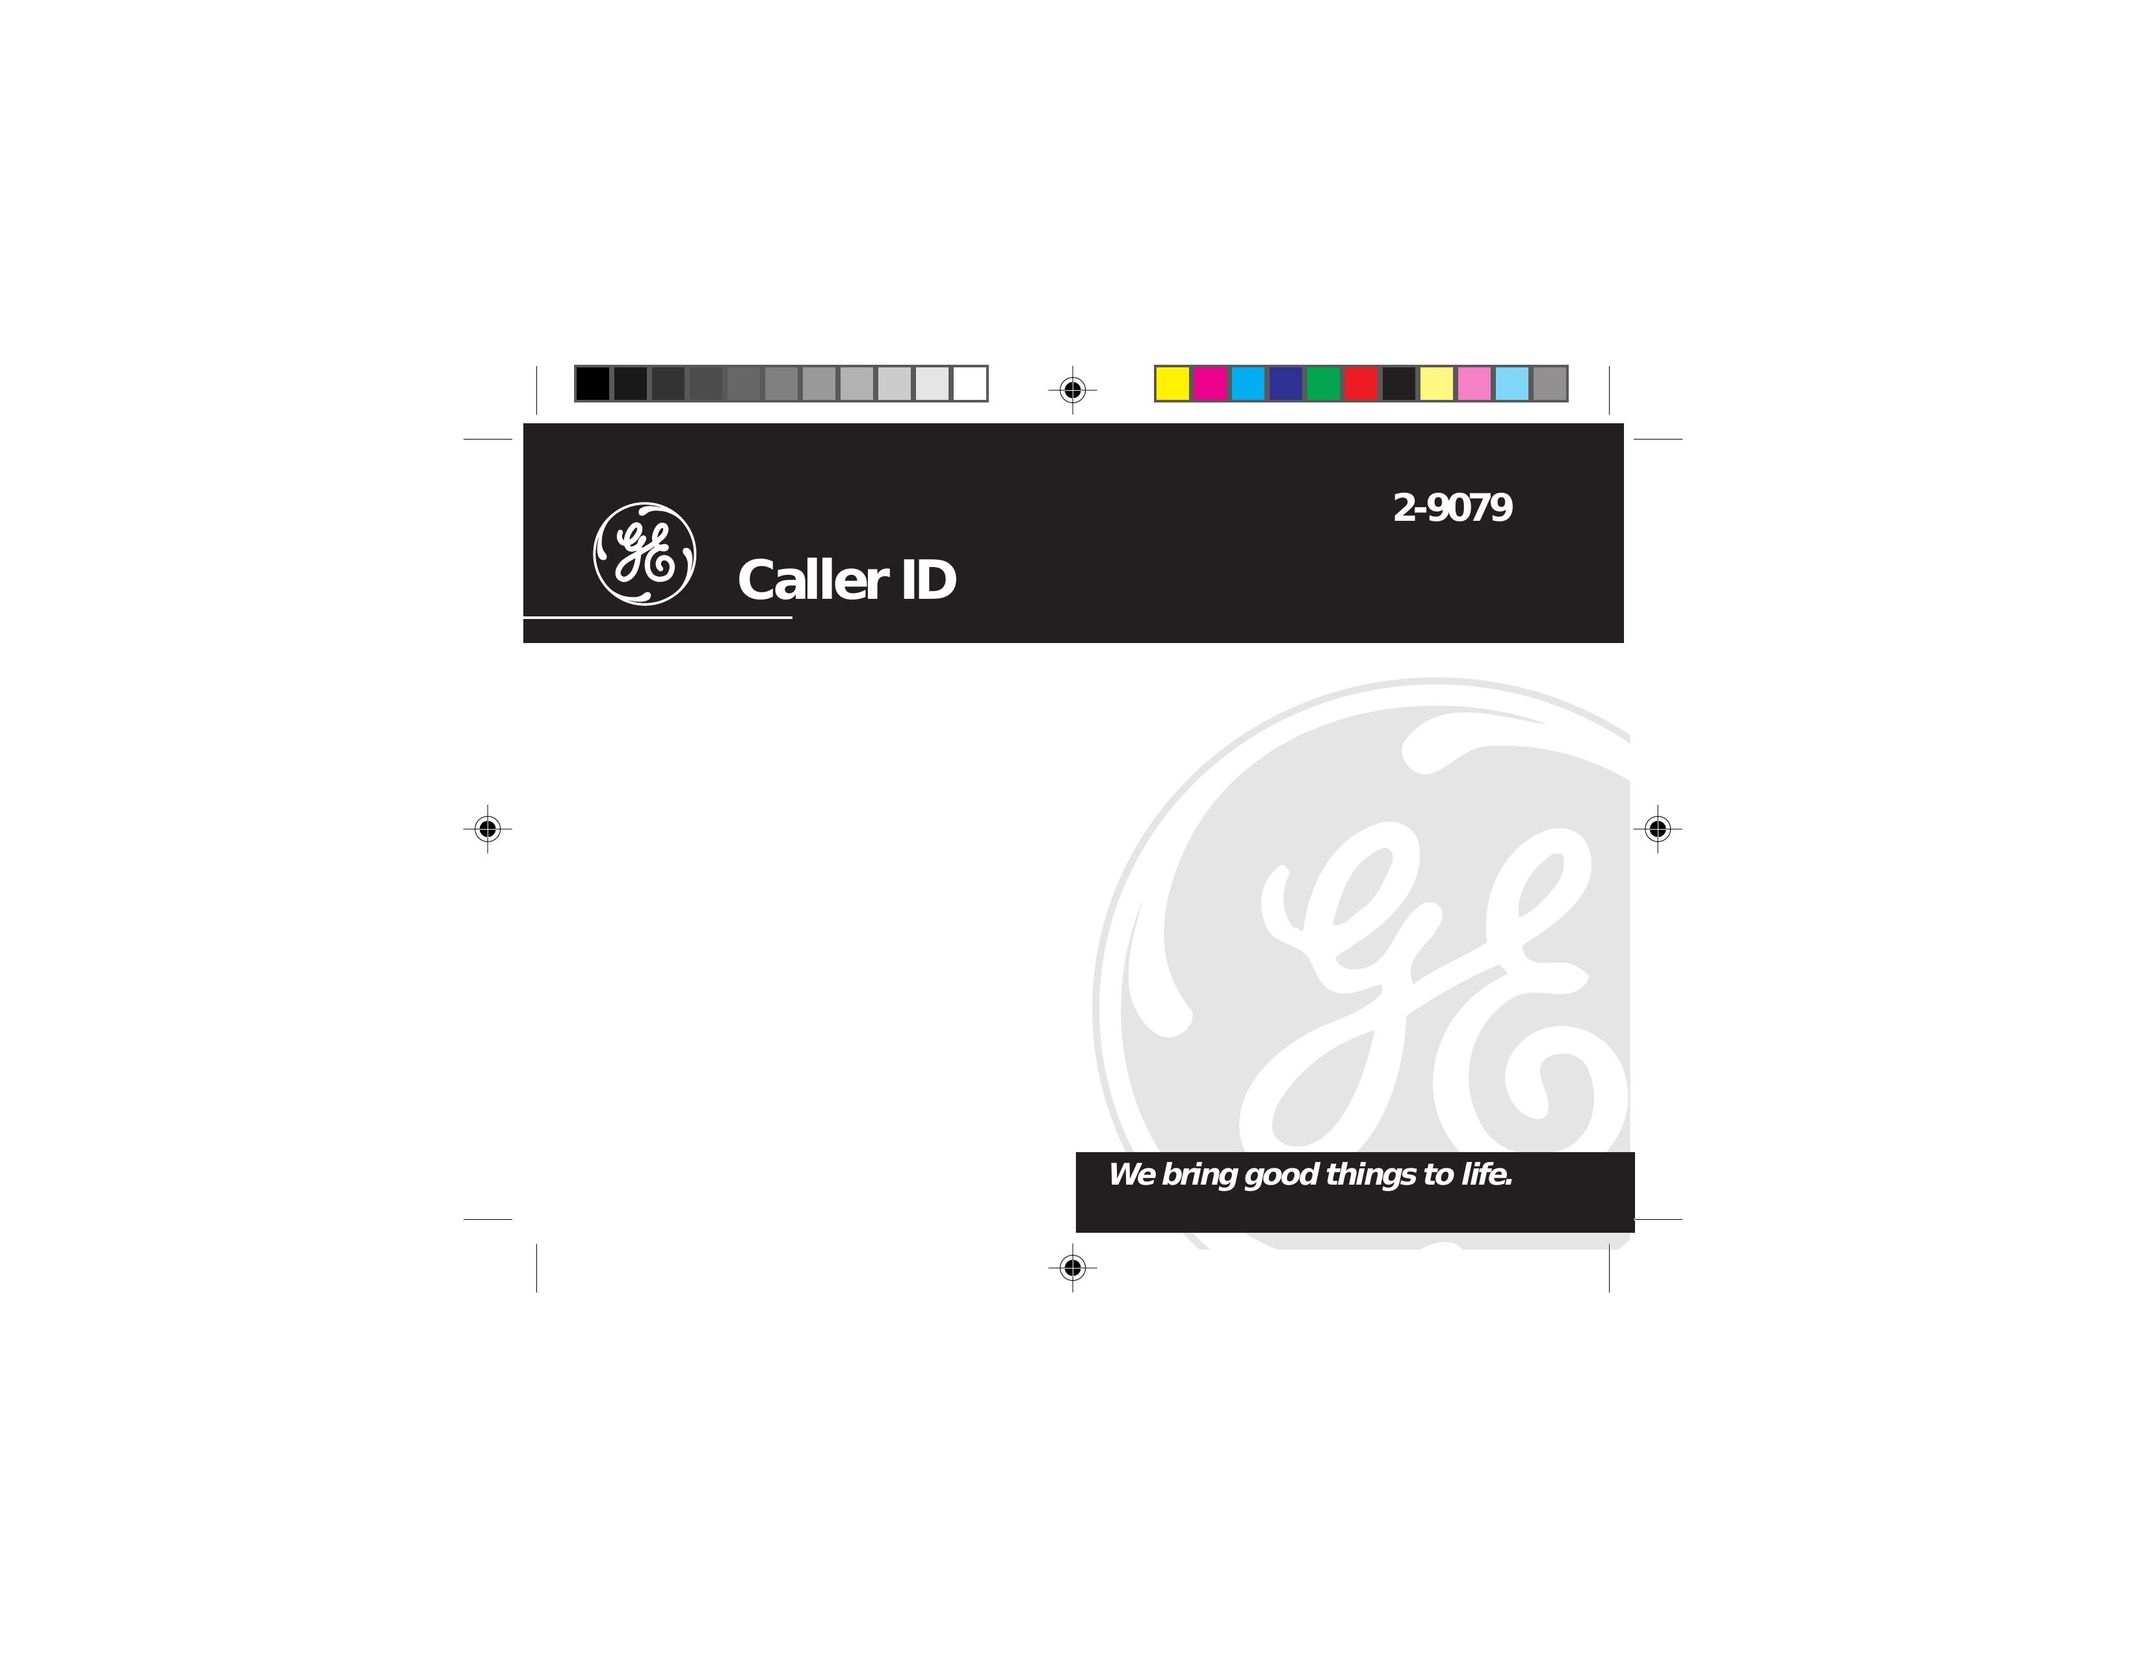 GE 347A8359-0001 Caller ID Box User Manual